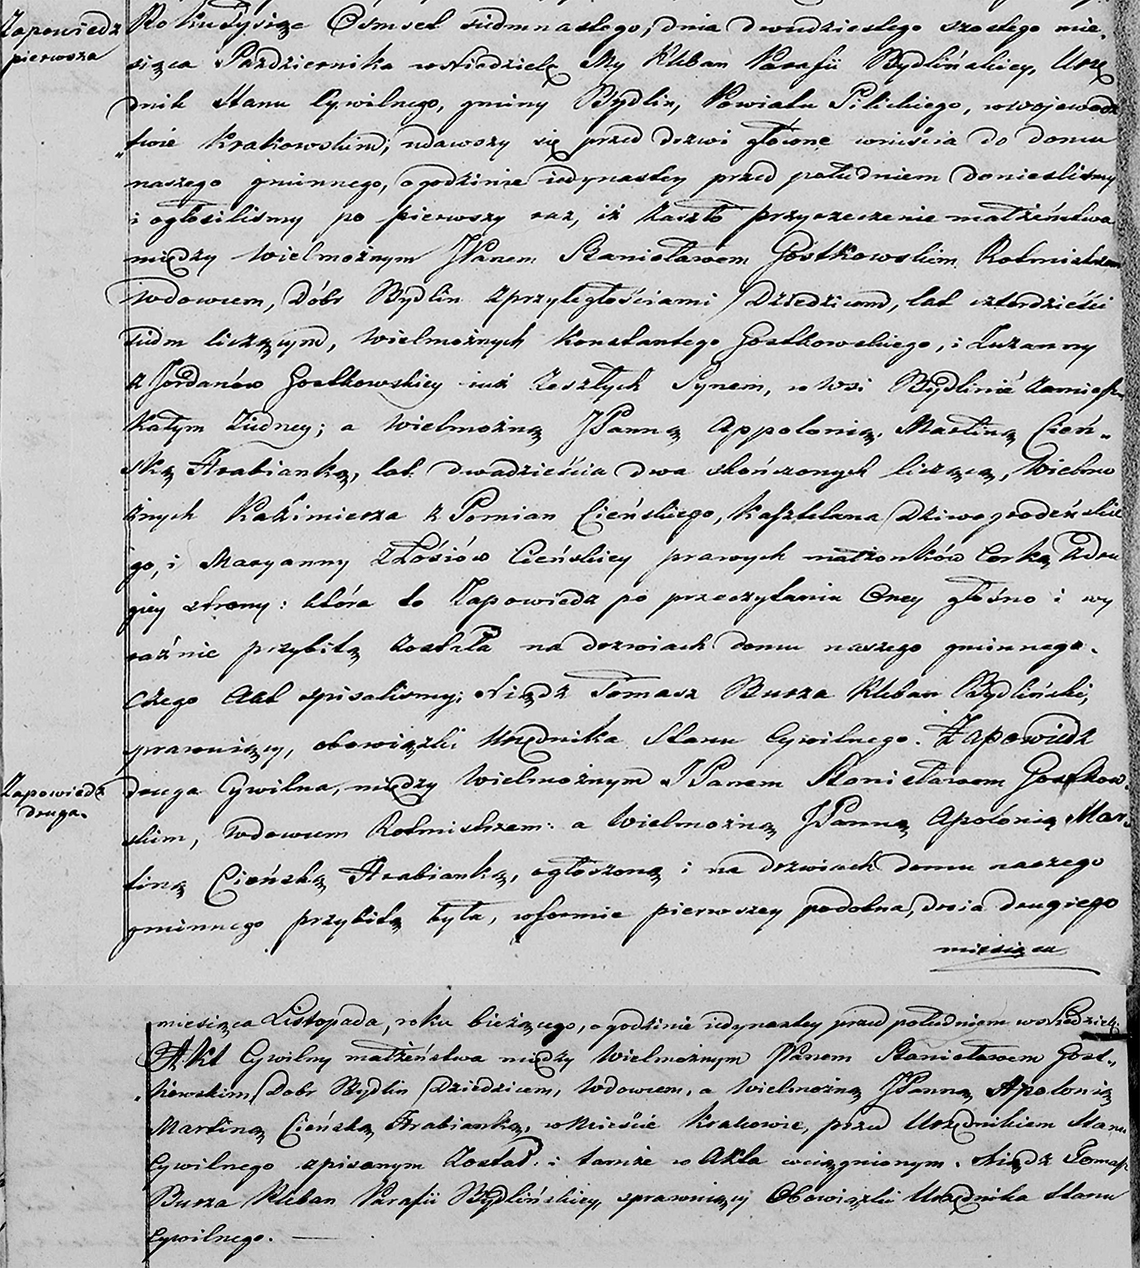 Stanisław Gostkowski & Appolonia Martina Cieński małż. 03.11.1817 r. (zapowiedzi - par. Bydlin 1817)